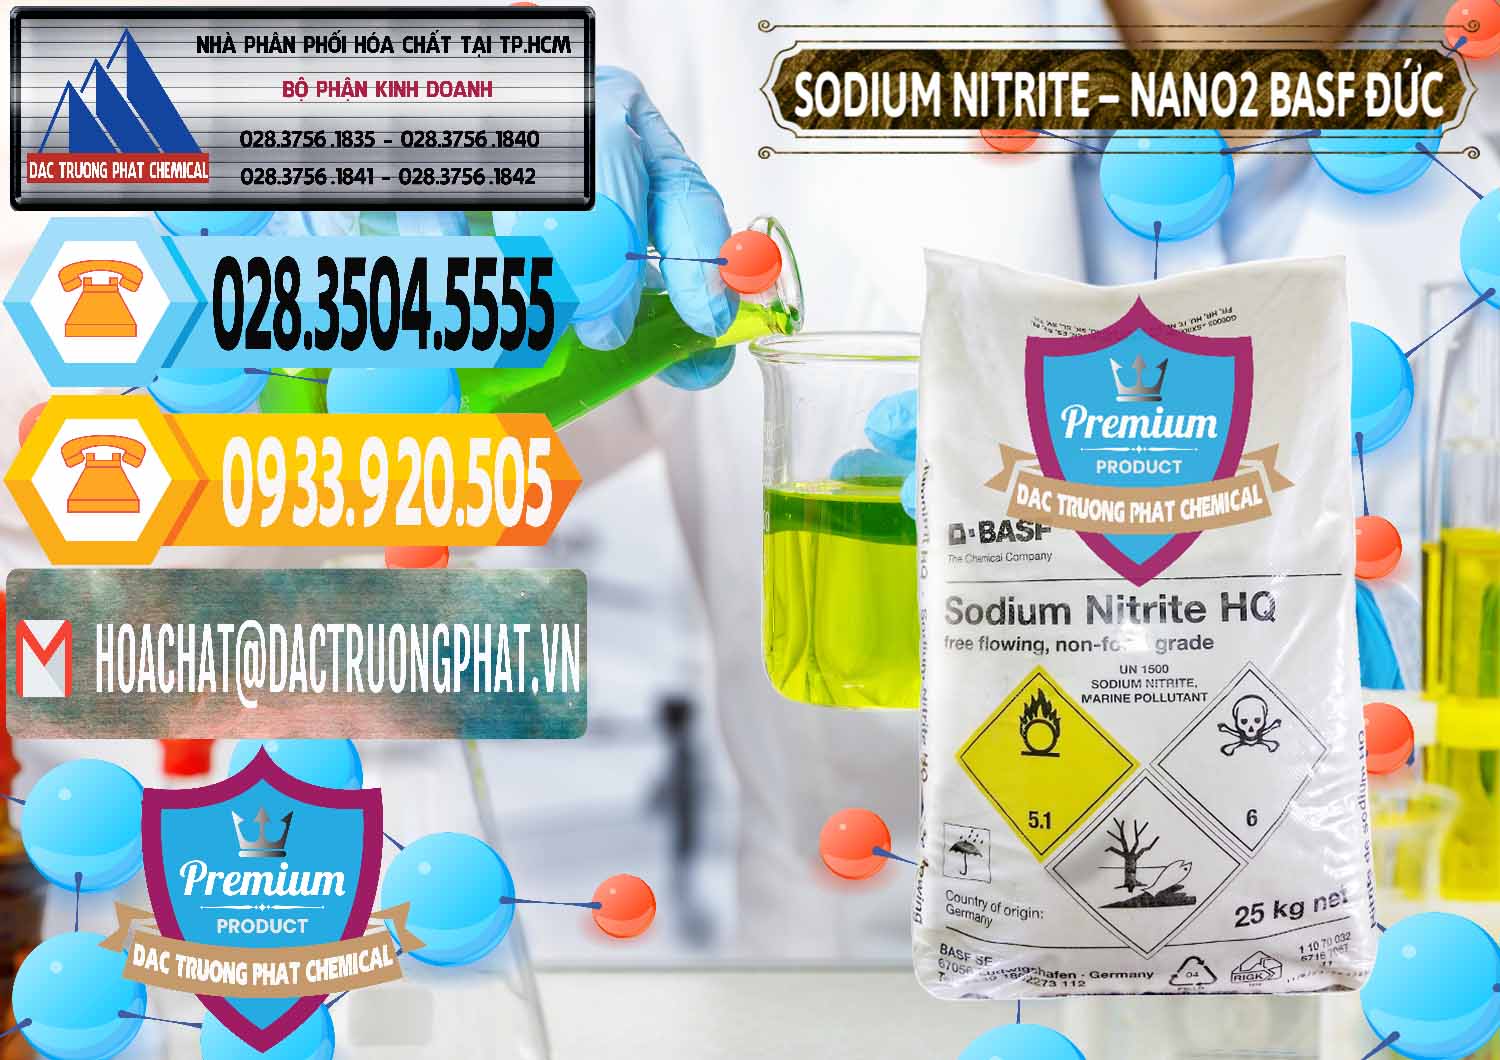 Công ty phân phối & bán Sodium Nitrite - NANO2 Đức BASF Germany - 0148 - Nơi chuyên phân phối và cung ứng hóa chất tại TP.HCM - hoachattayrua.net